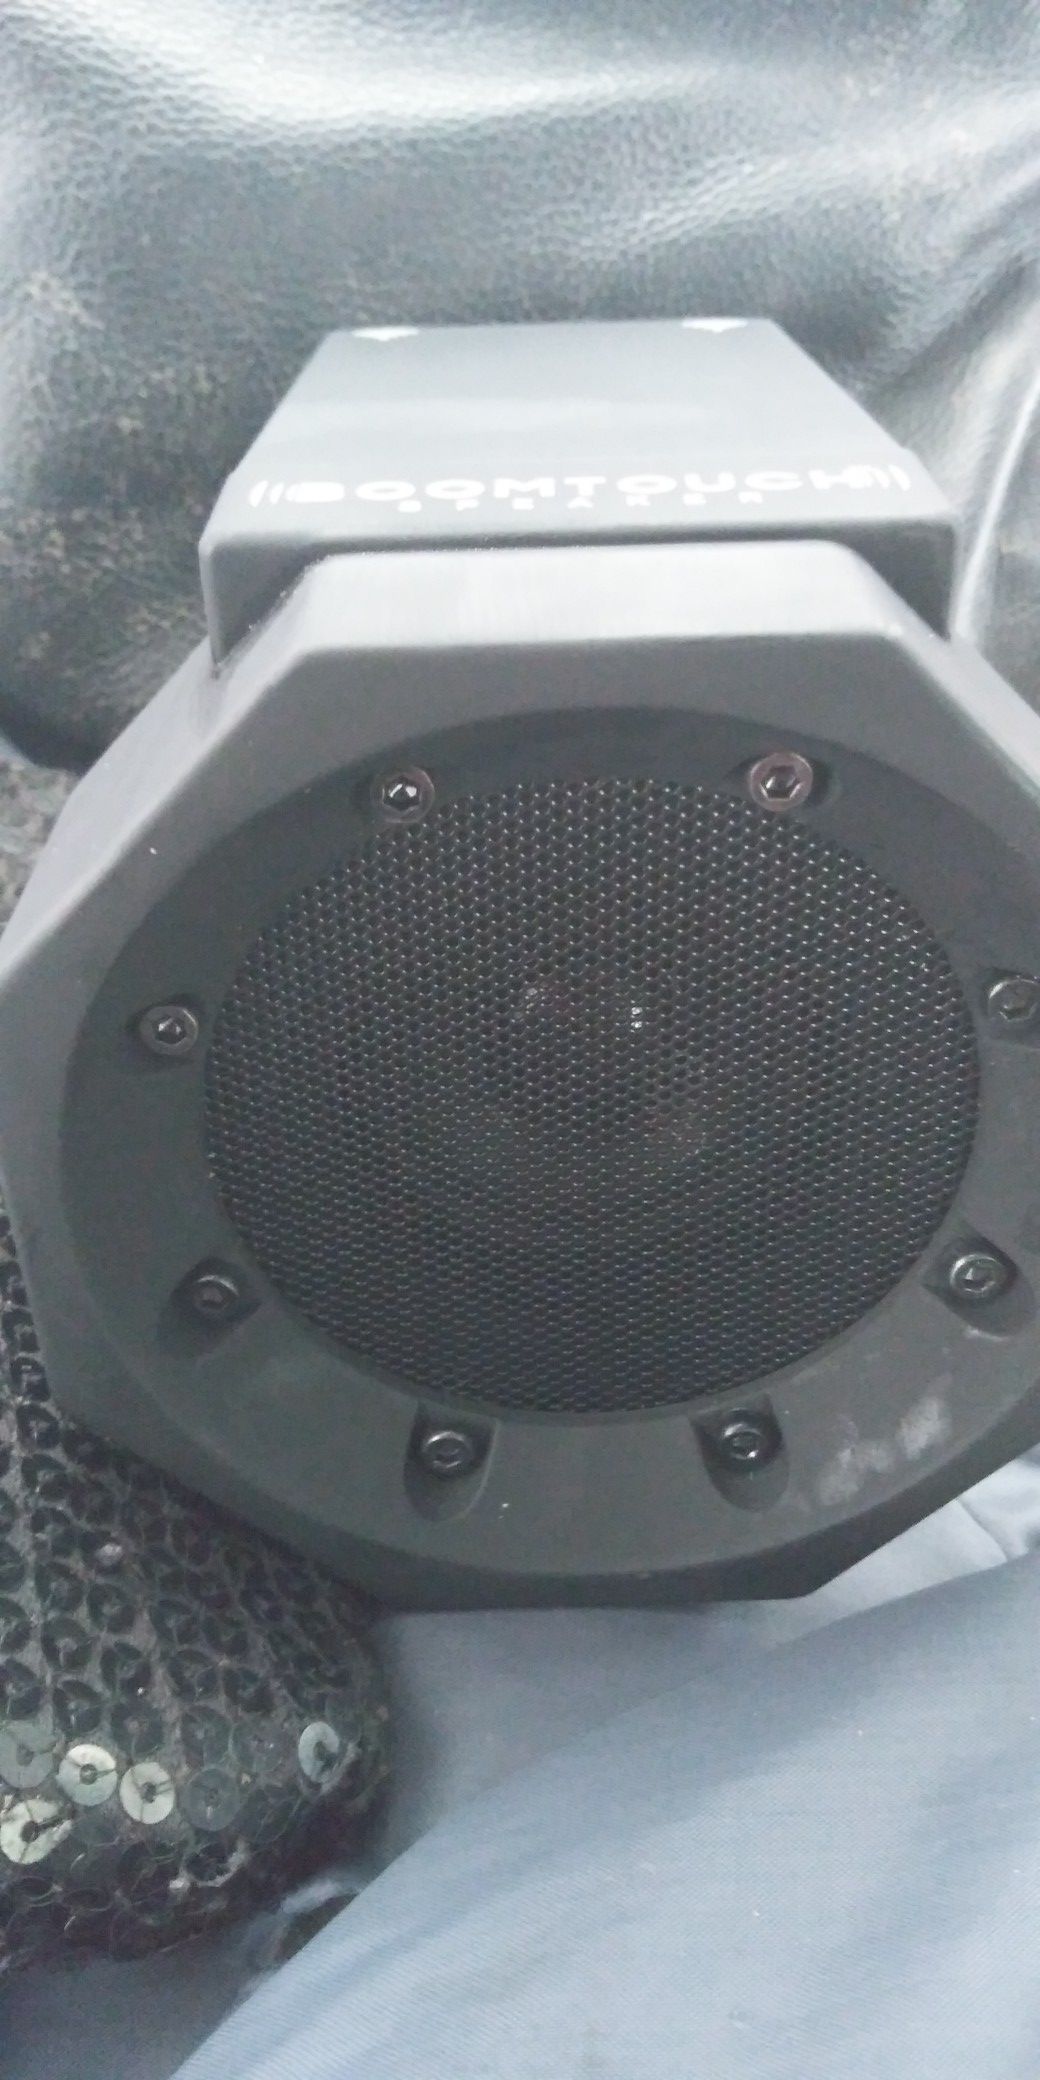 Boomtouch bluetooth speaker